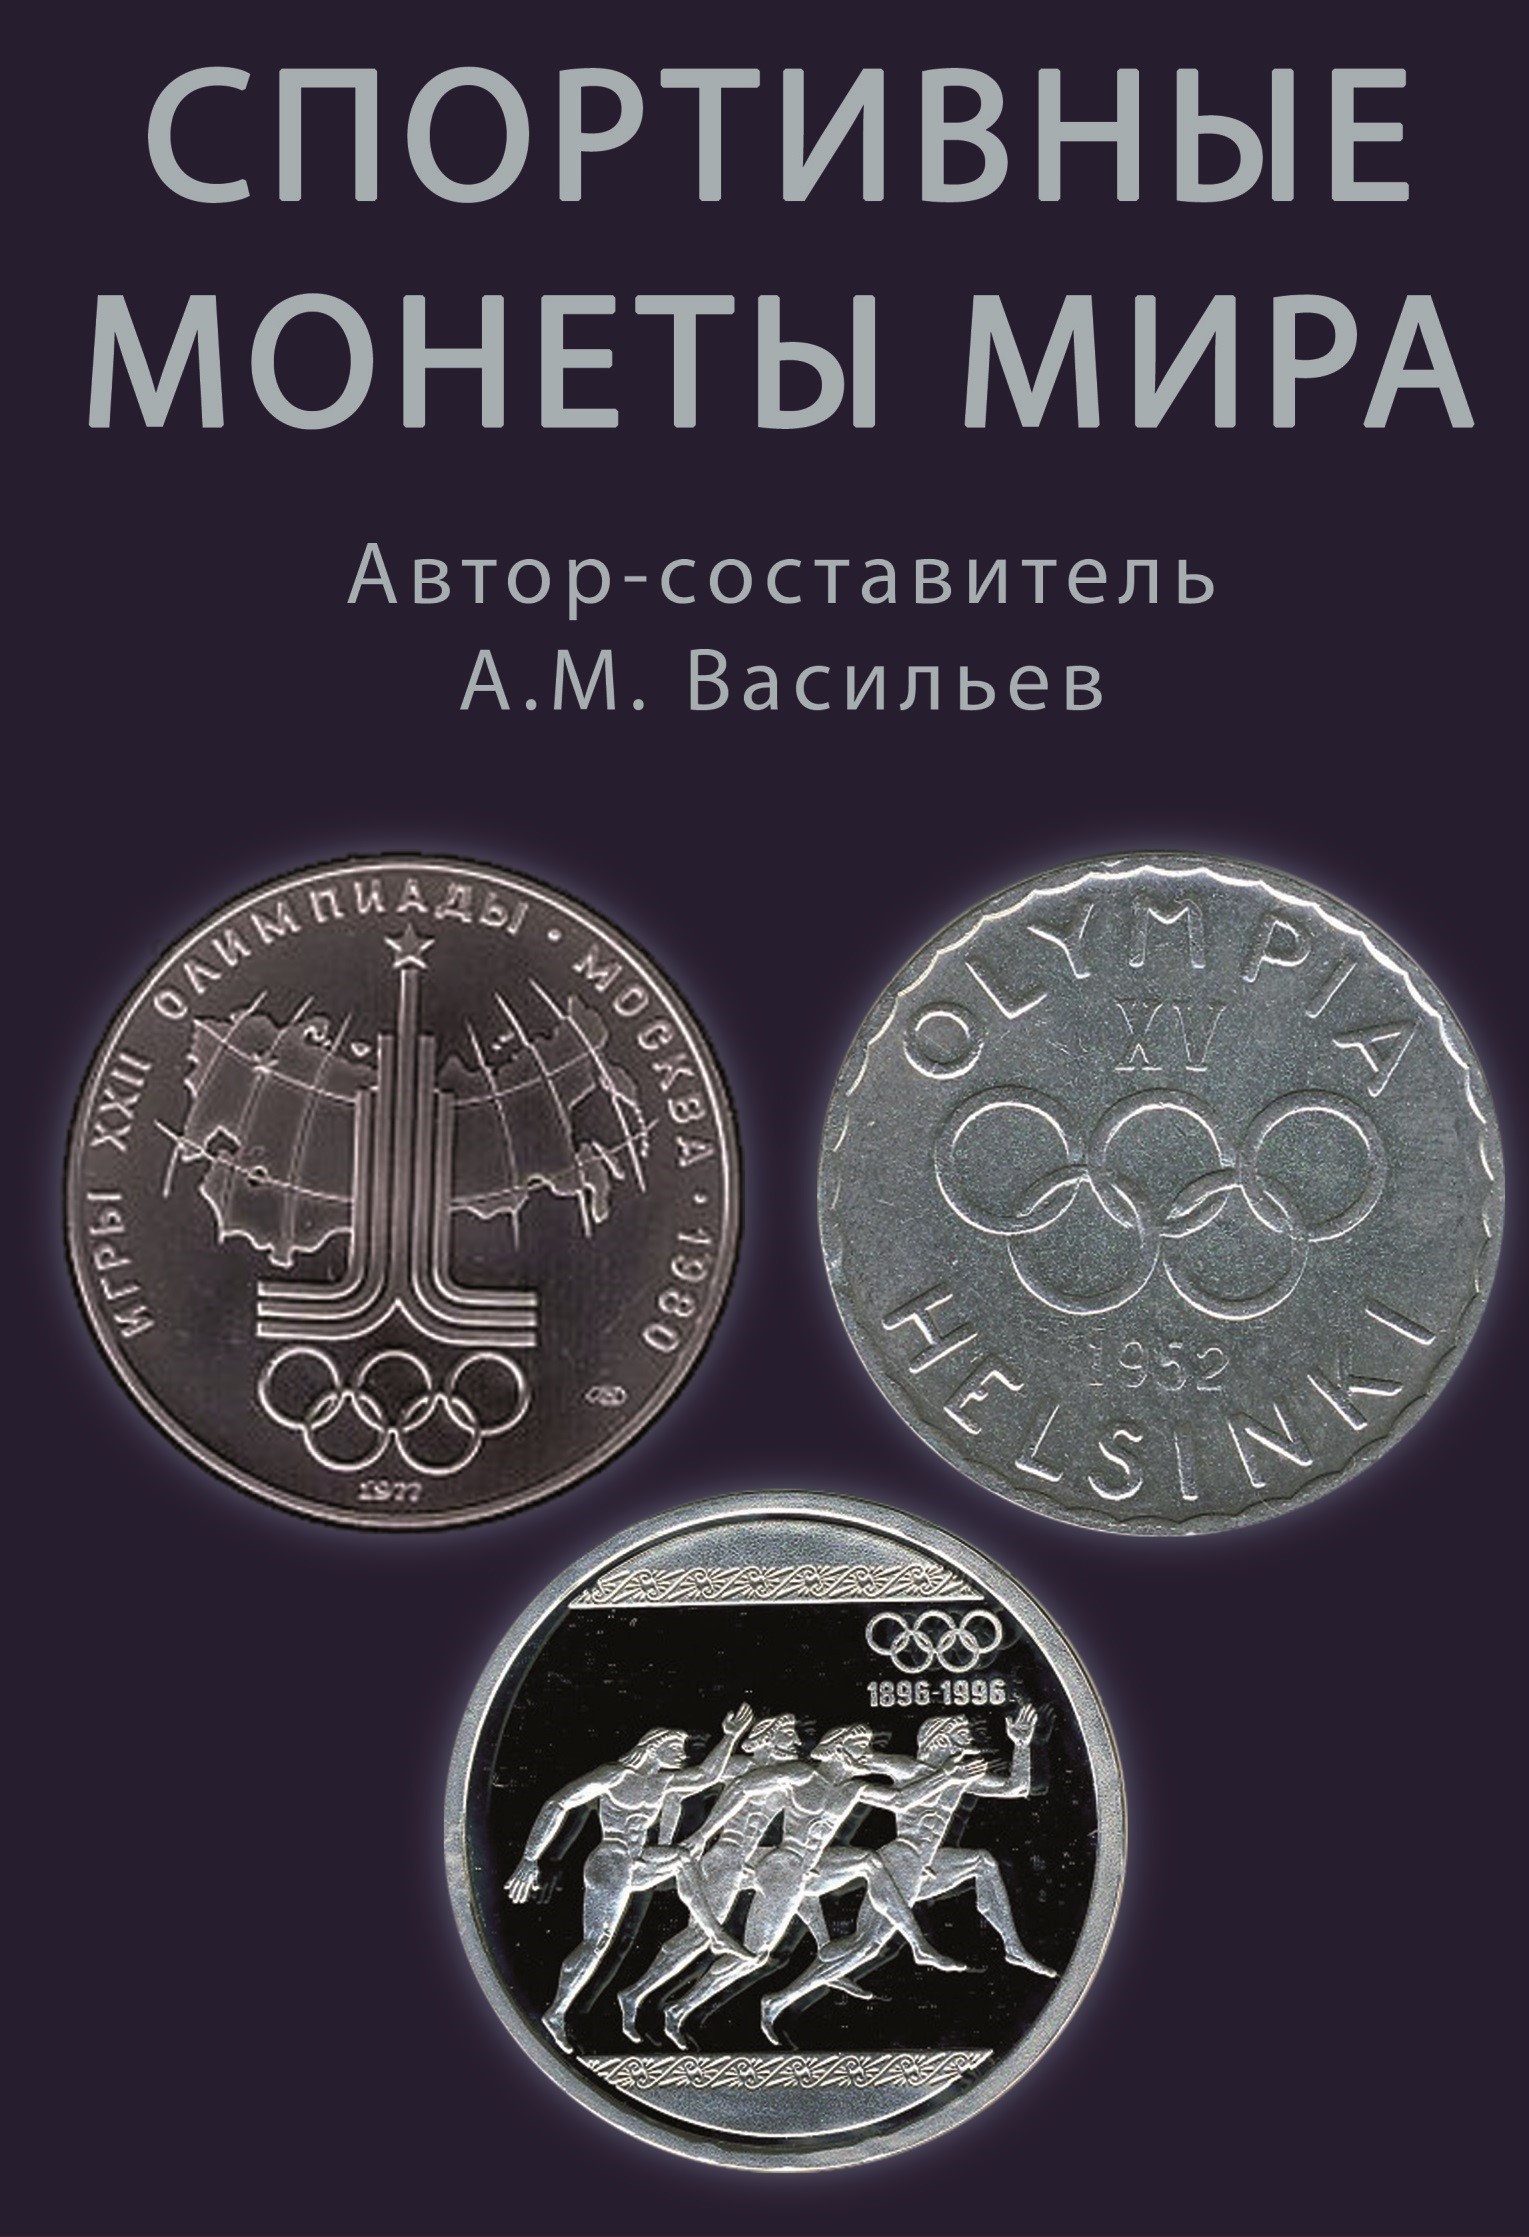 Каталог спортивные монет мира. А.М. Васильев